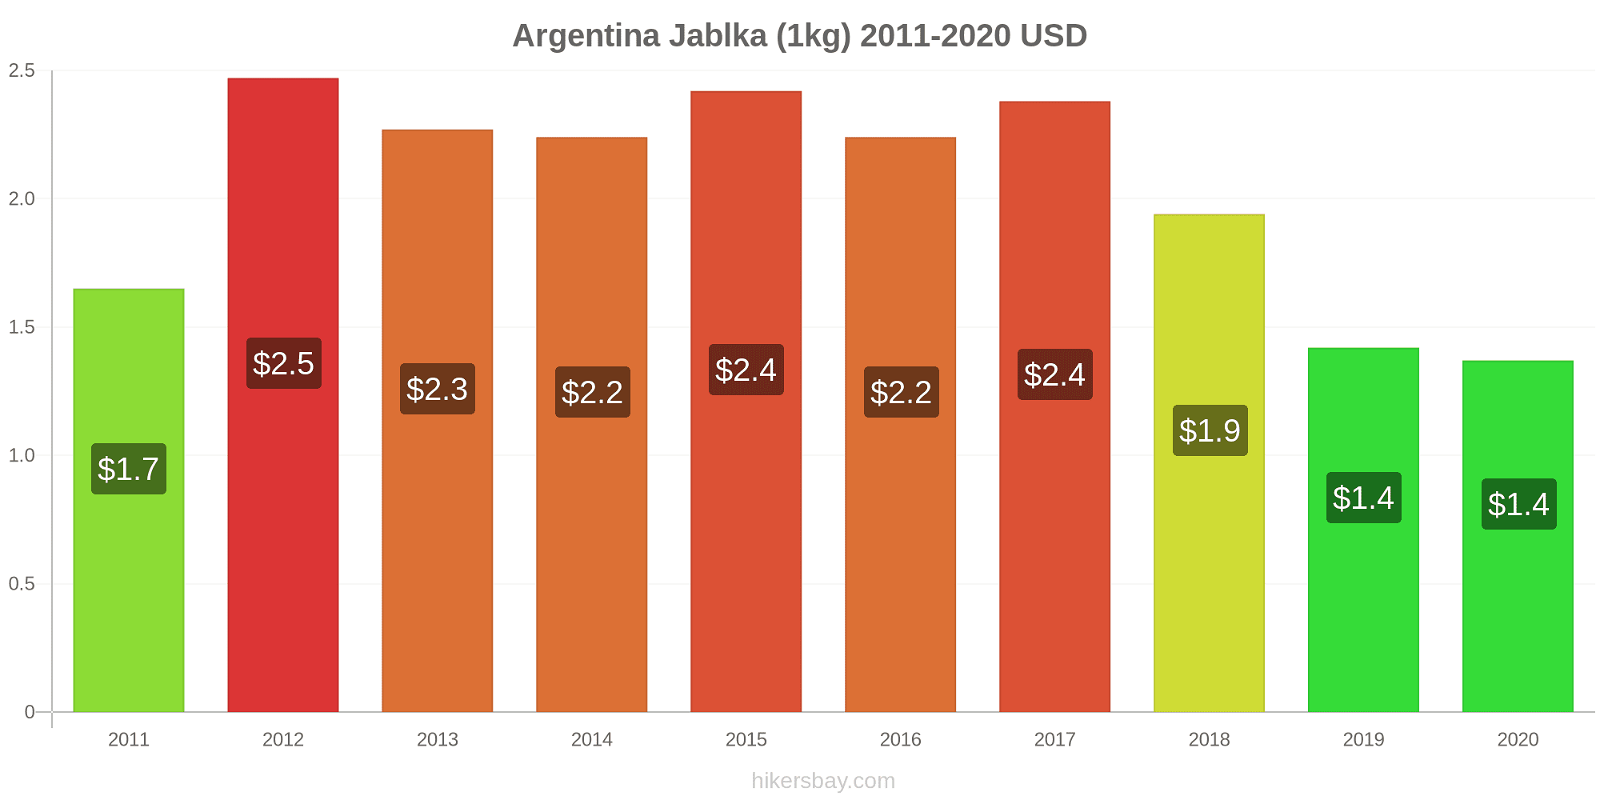 Argentina změny cen Jablka (1kg) hikersbay.com